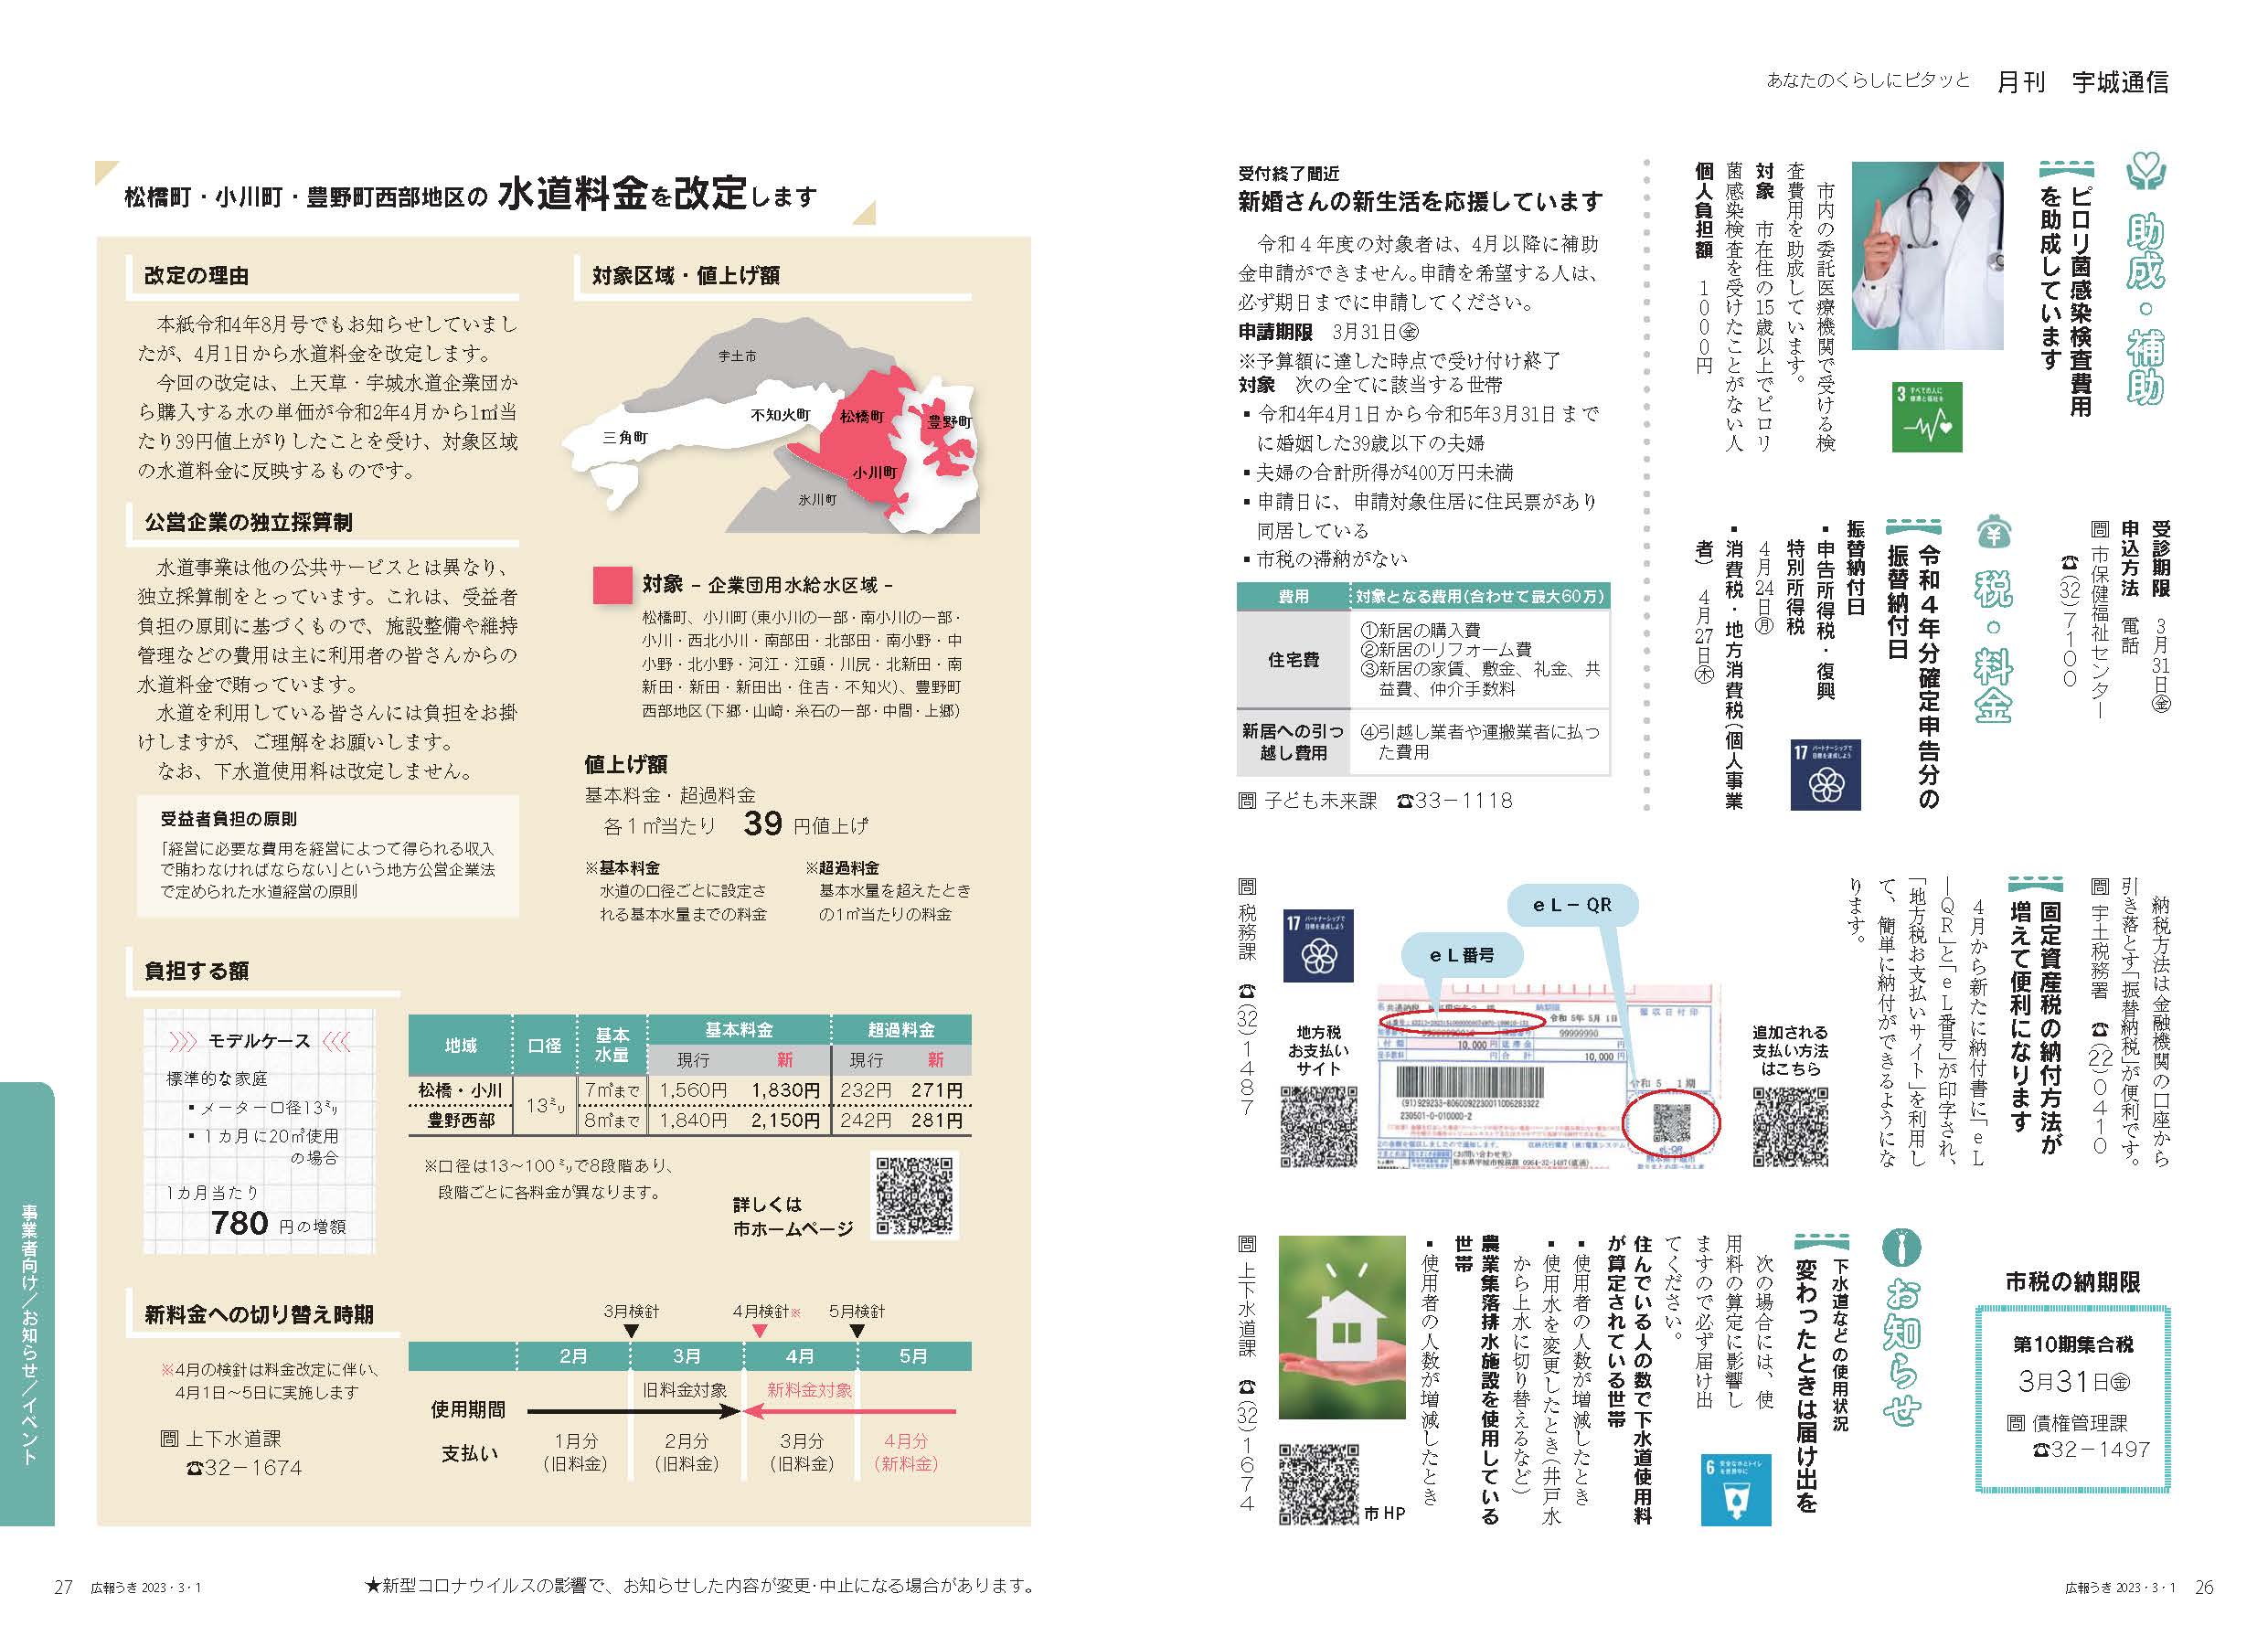 P26、P27 月刊 宇城通信のページ画像、詳細はPDFリンクを参照ください。